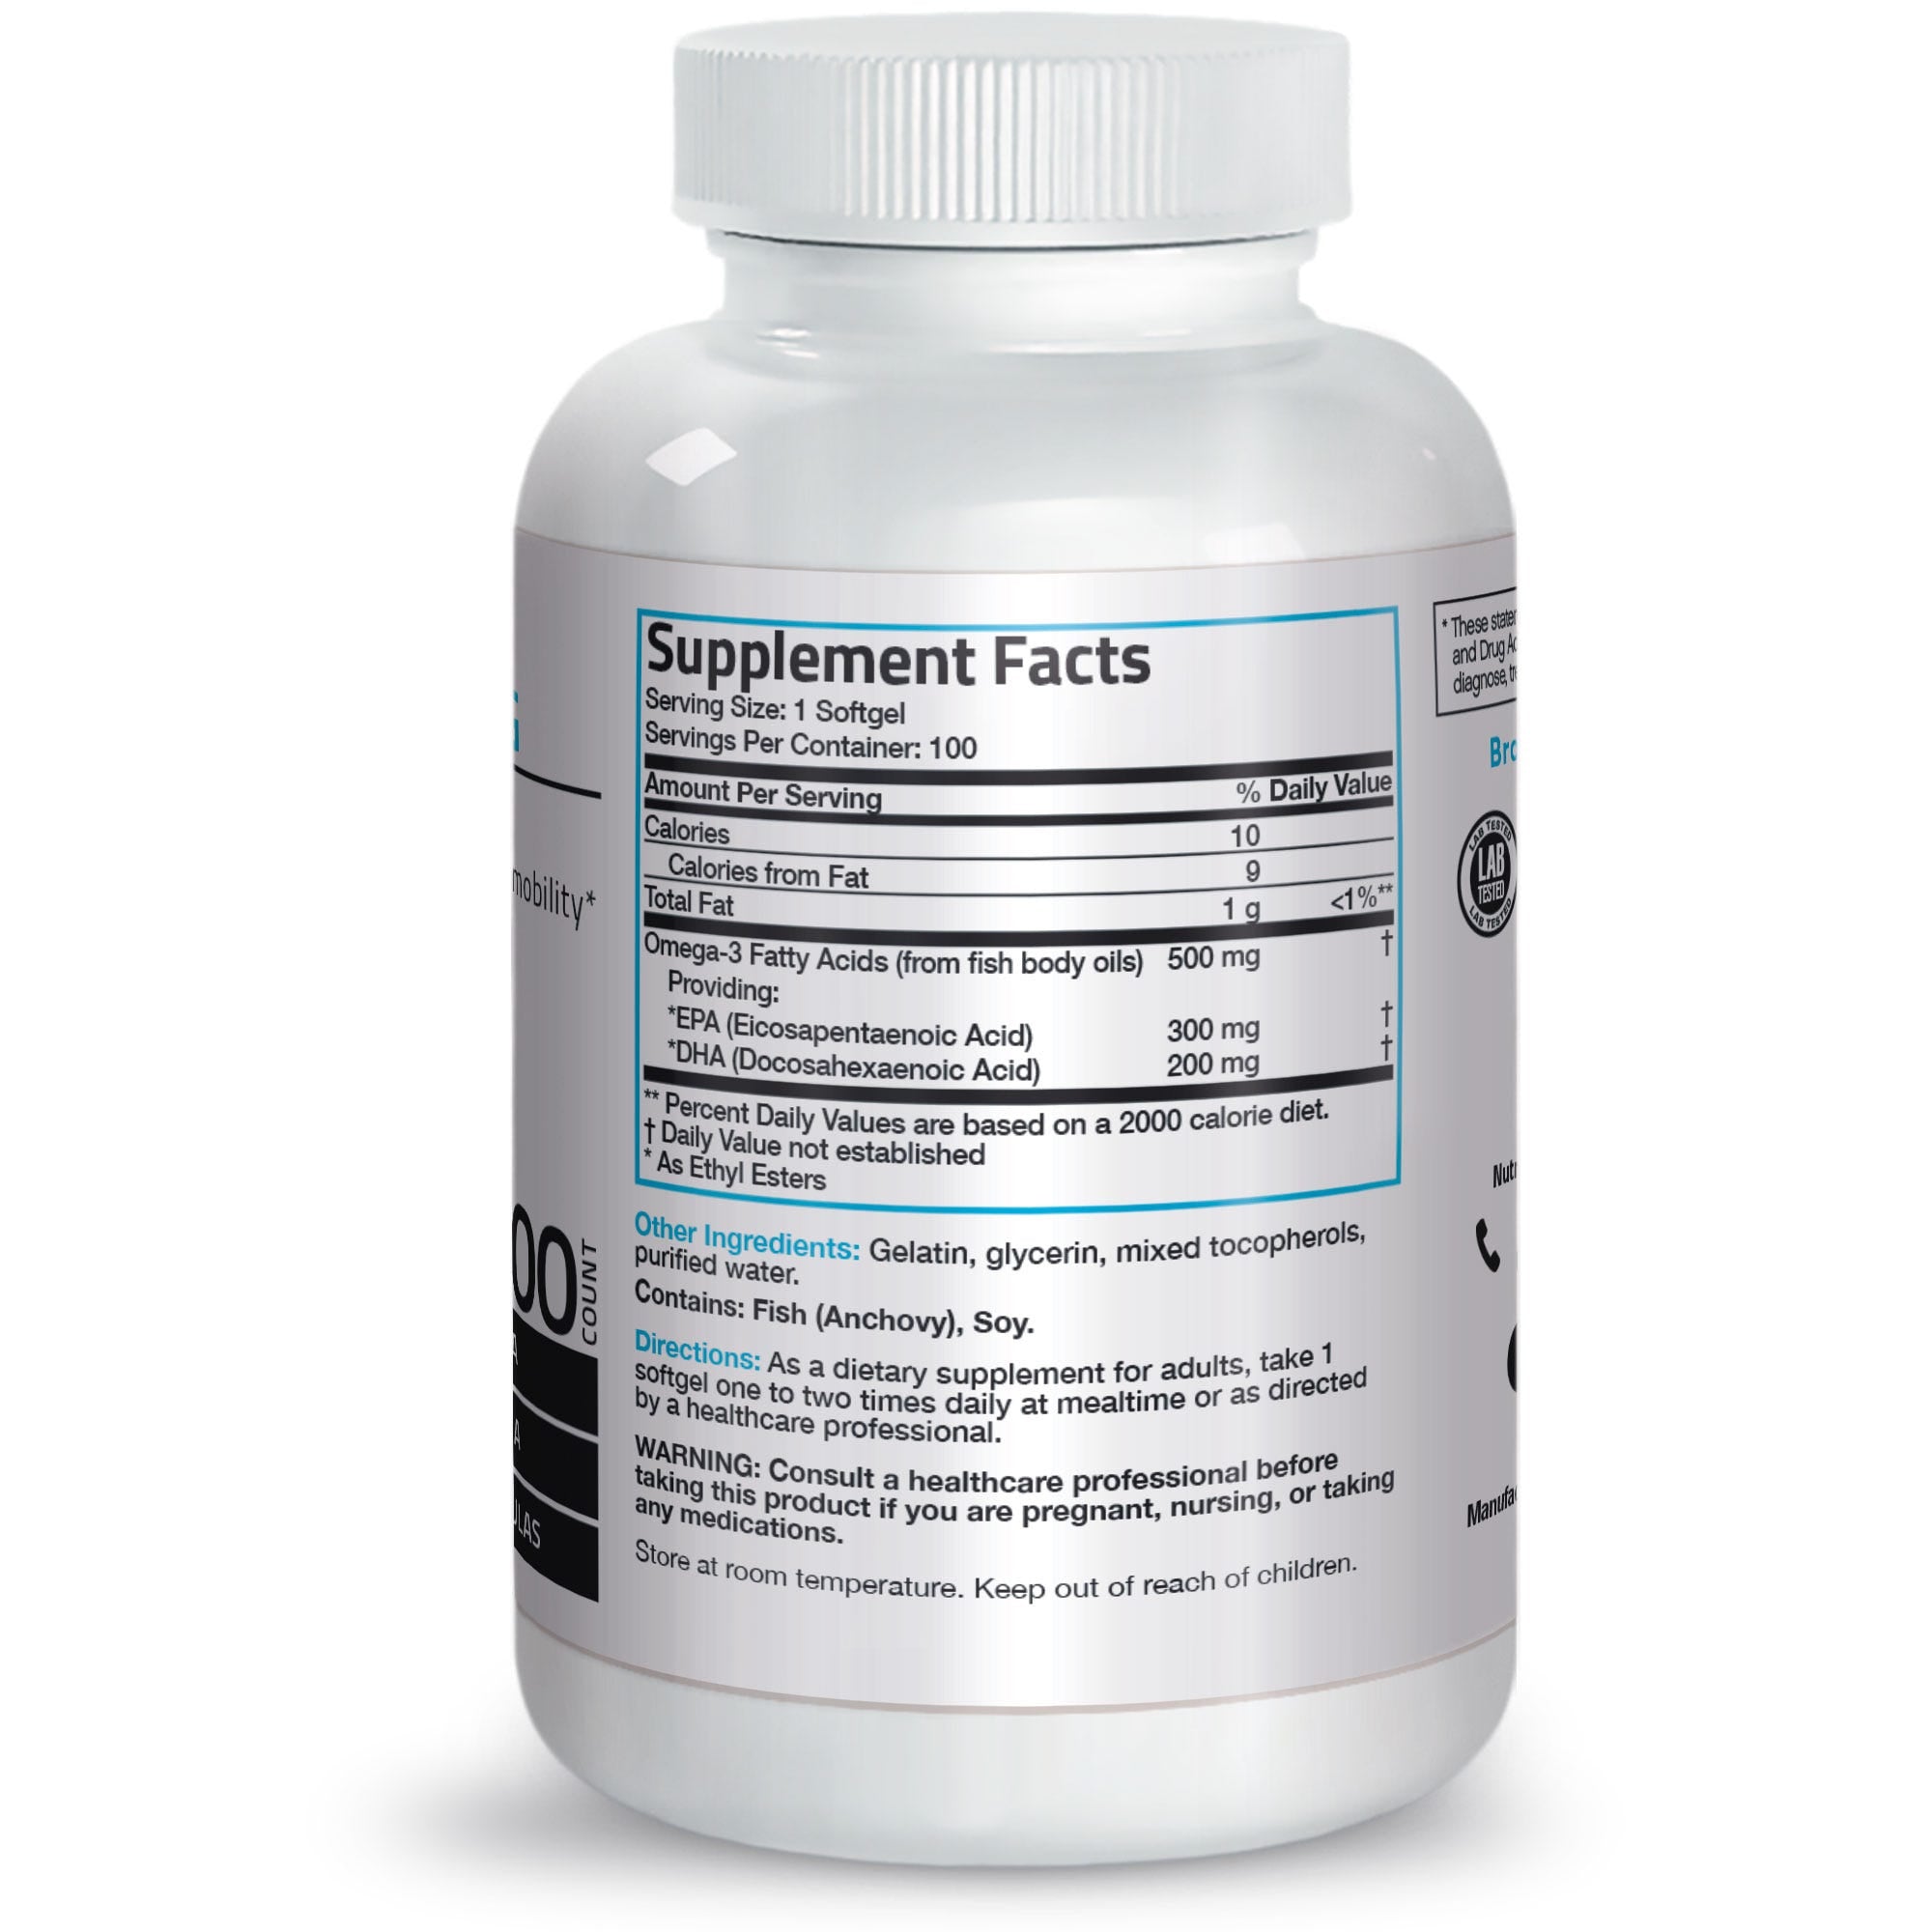 Super Omega-3 EPA DHA Fatty Acids - 500 mg view 2 of 4